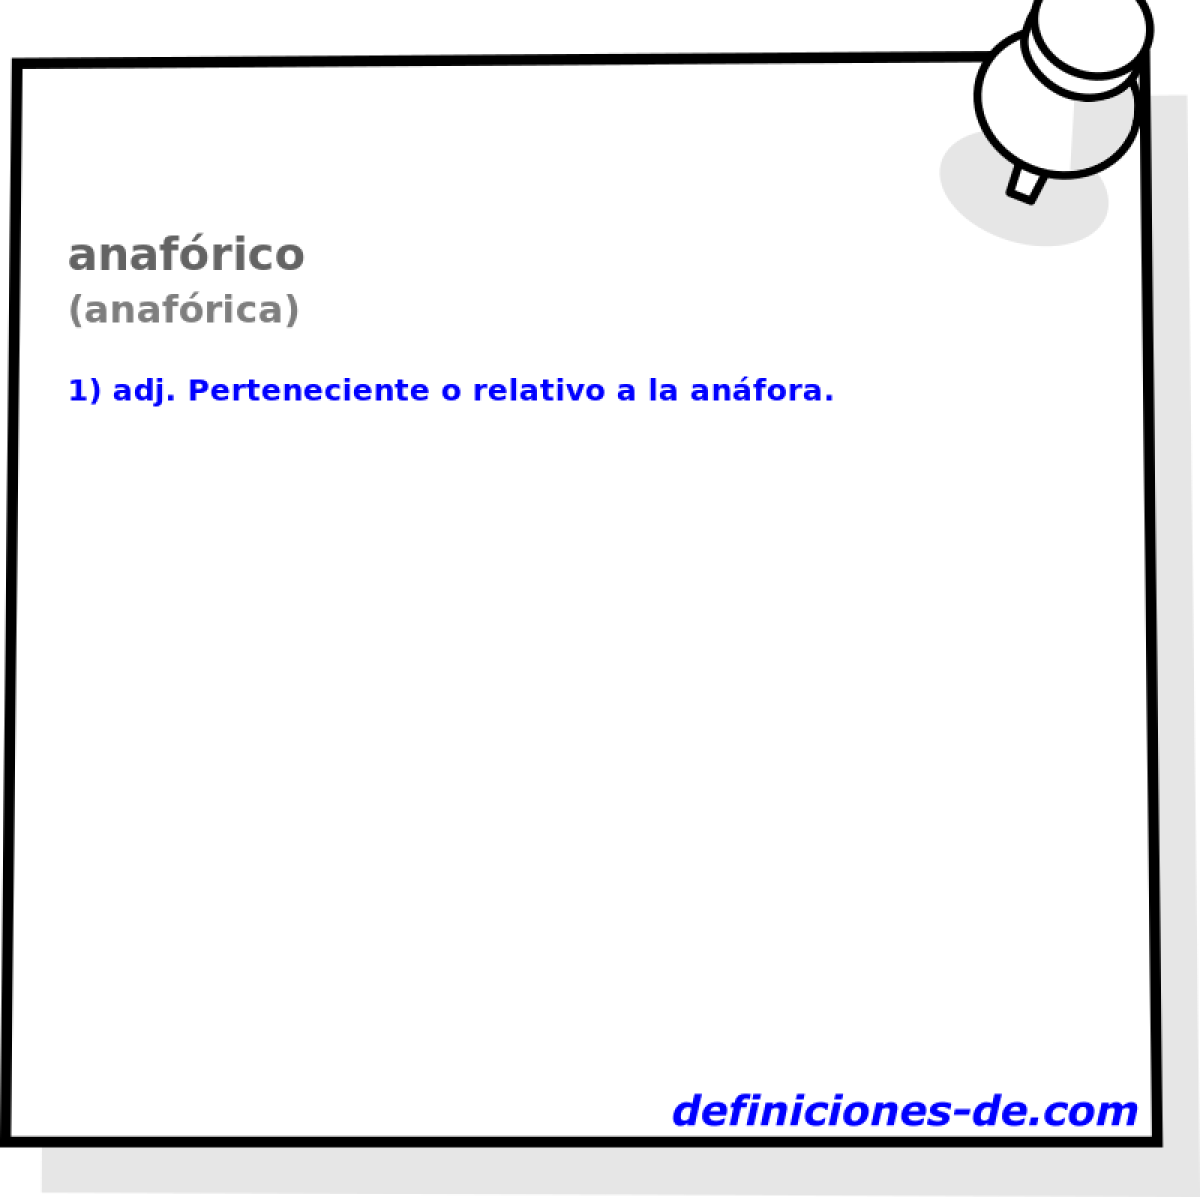 anafrico (anafrica)